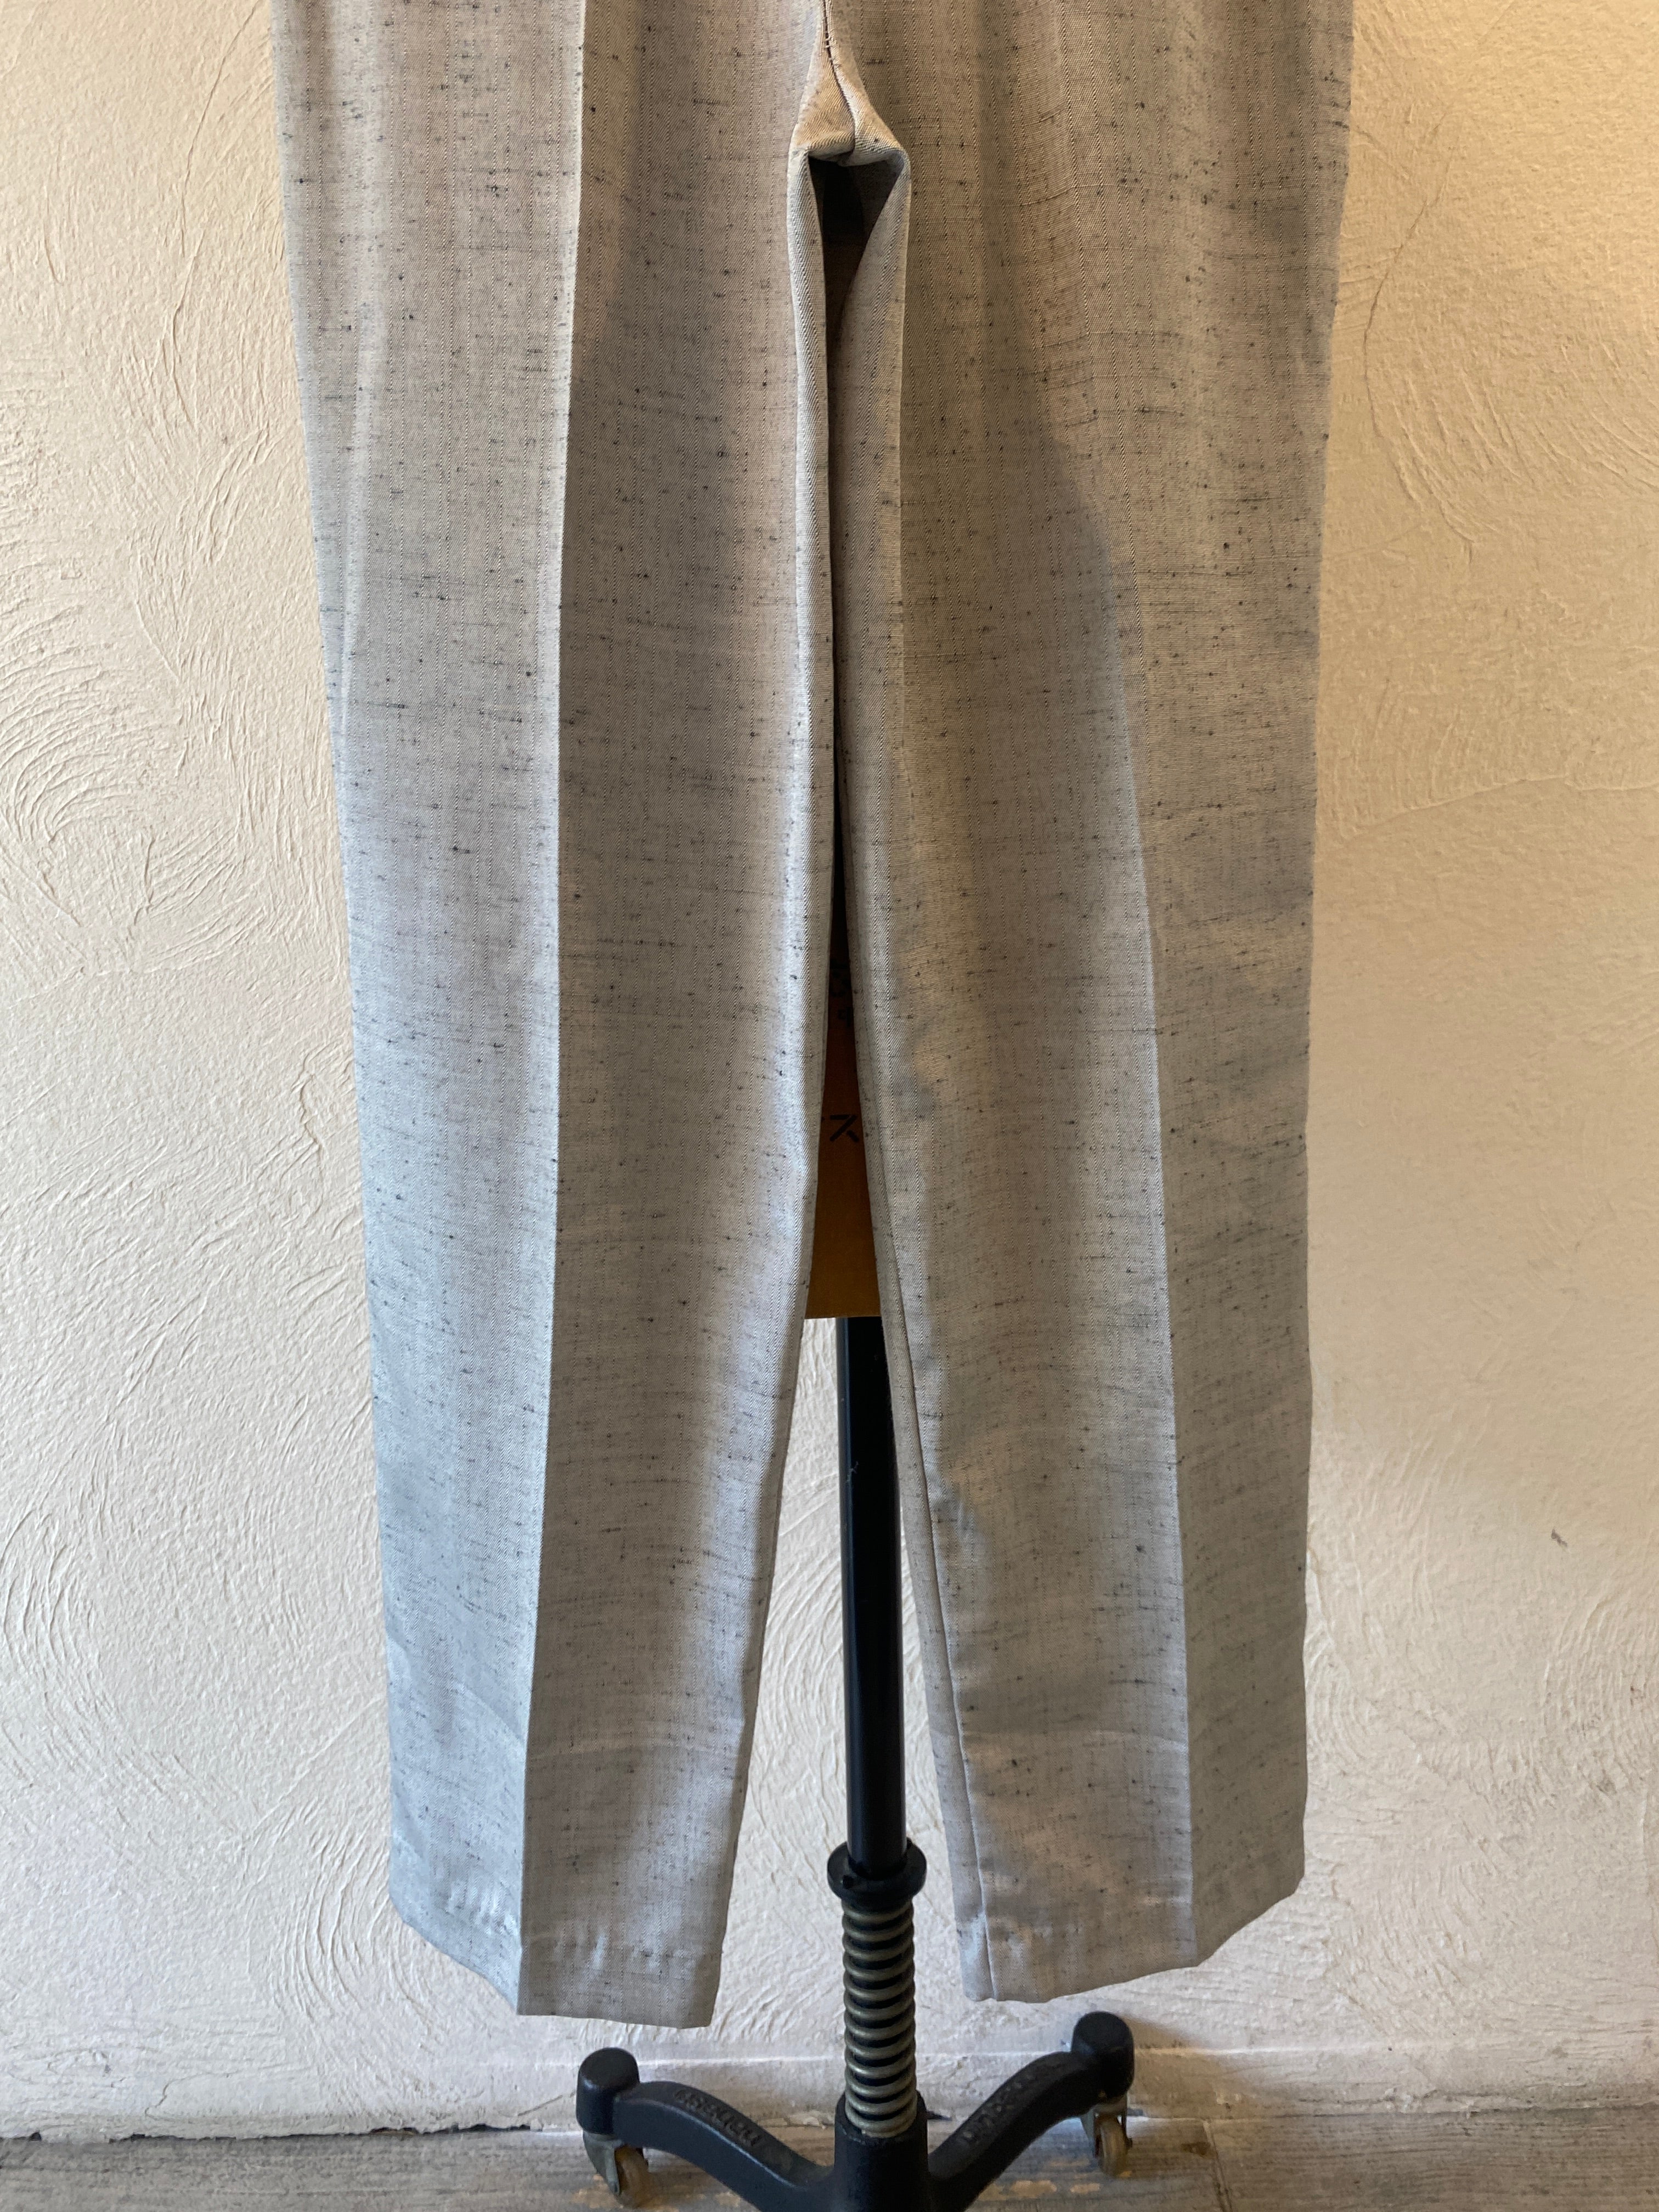 silver gray shantung pants